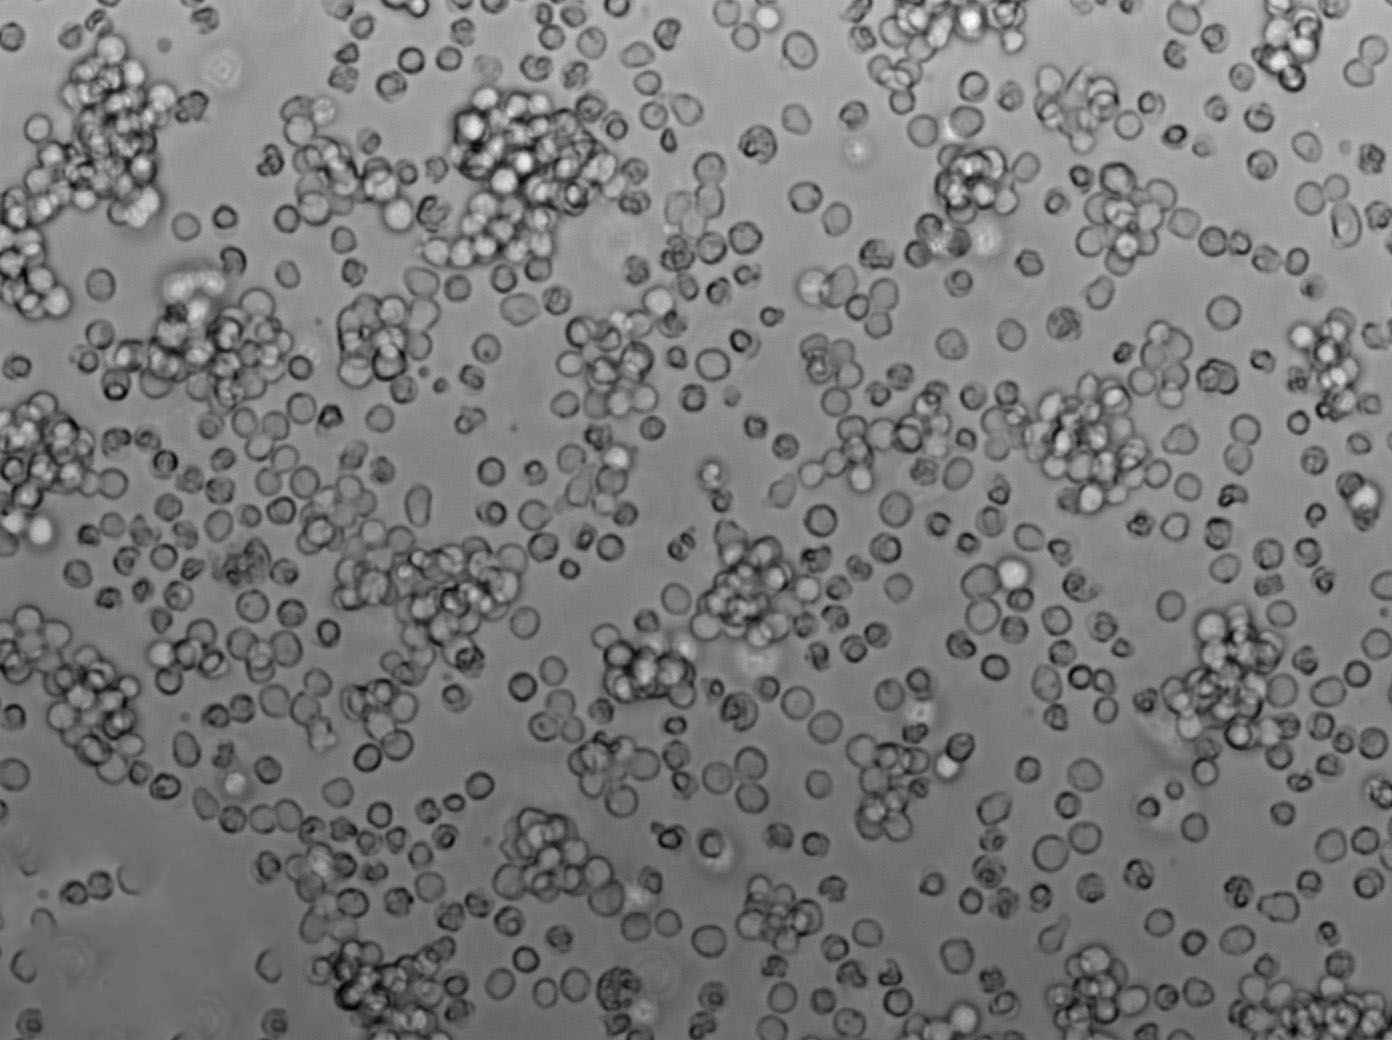 SU-DHL-4人弥漫性组织淋巴瘤复苏细胞(附STR鉴定报告)